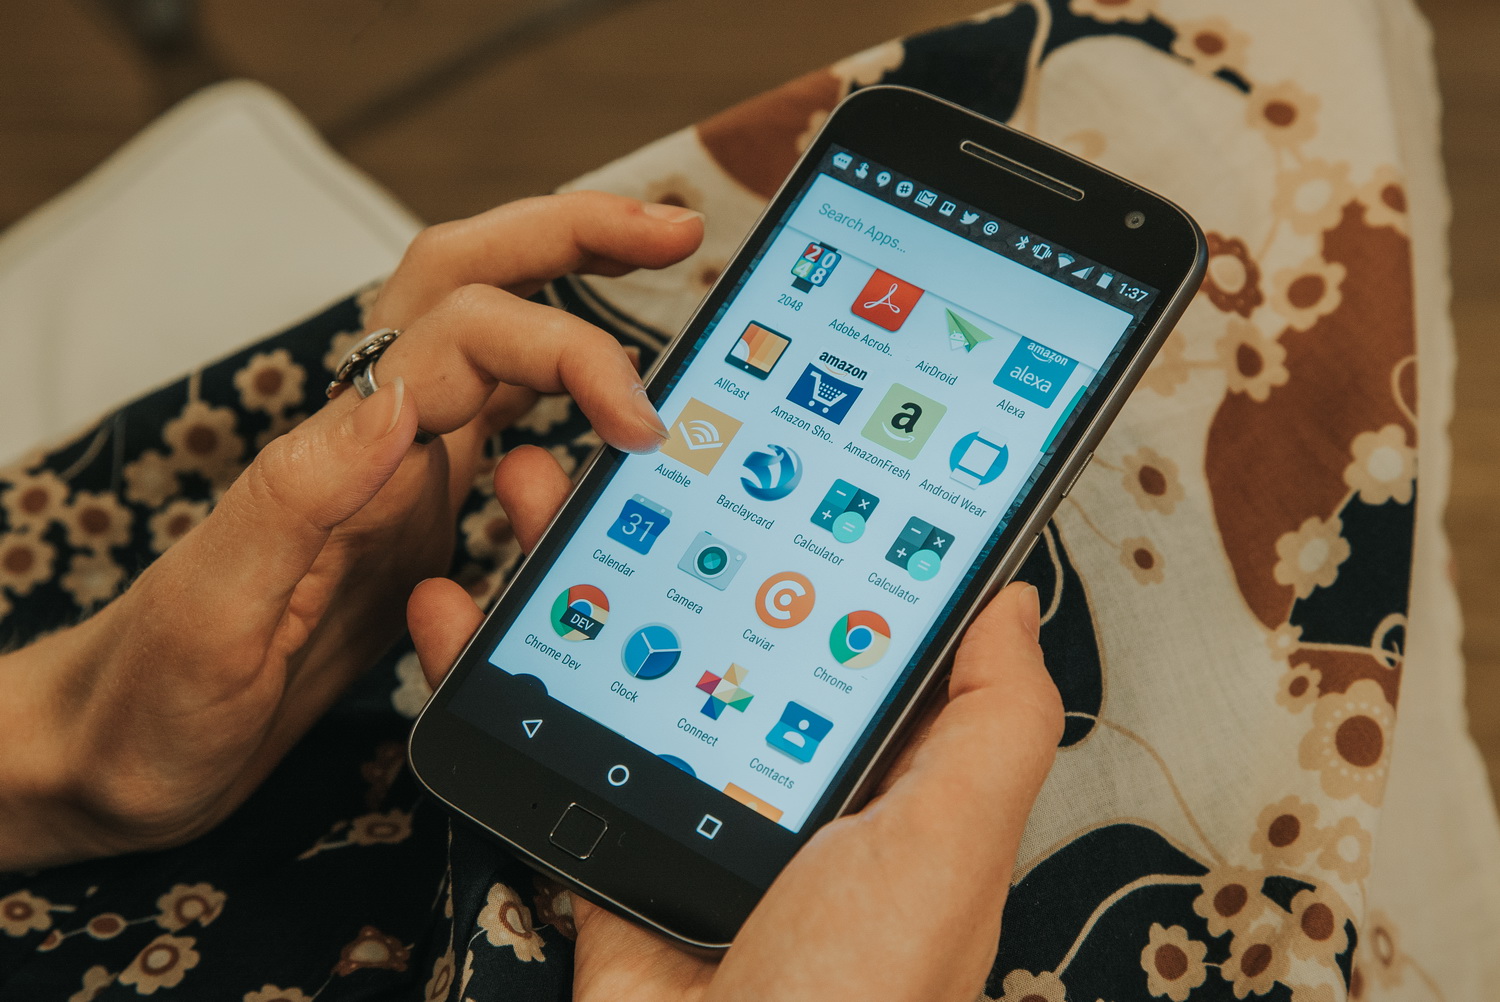 Moto G4 Play: como fazer backup no celular